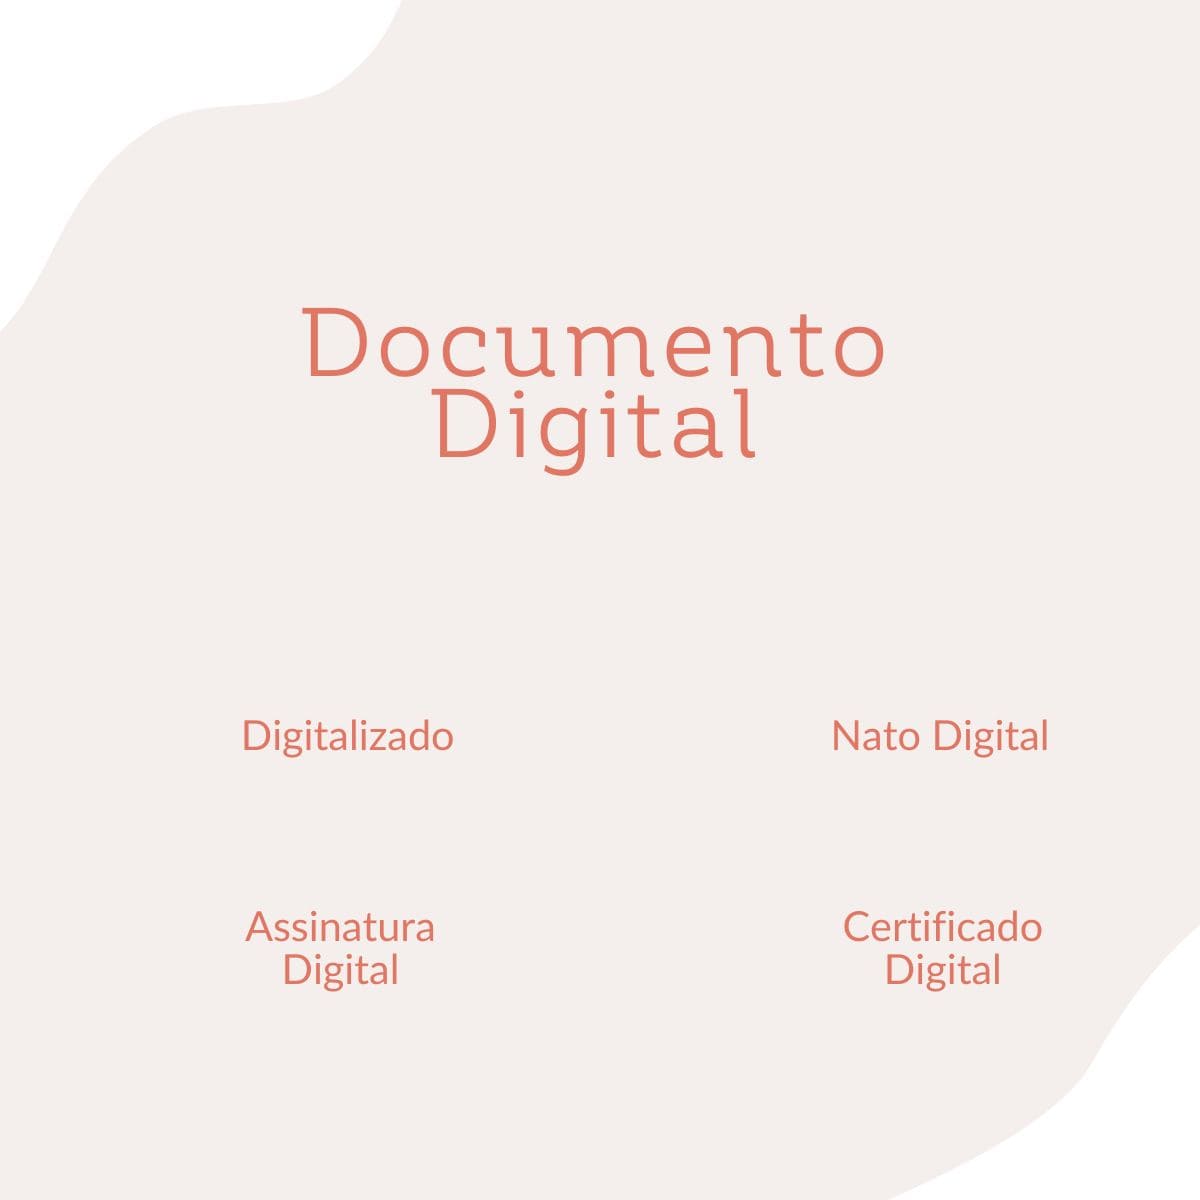 O que é Documento Digital, Digitalizado, Nato Digital, Certificado Digital, Assinatura Digital